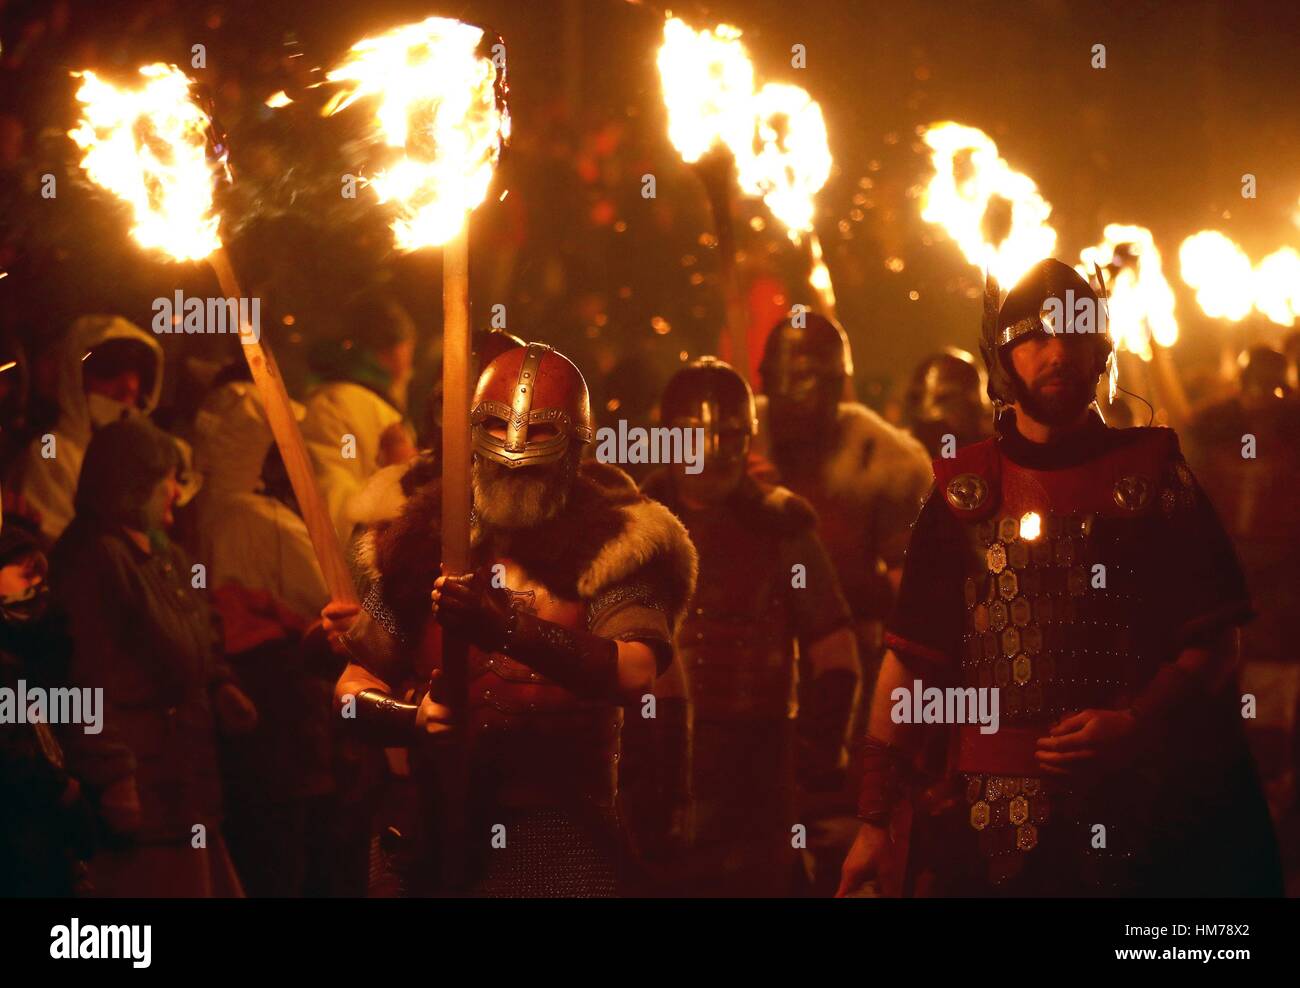 Les membres de l'équipe de Jarl vêtus de costumes de Vikings portent des torches enflammées au cours de l'Up Helly Aa festival viking à Lerwick sur les îles Shetland. Banque D'Images